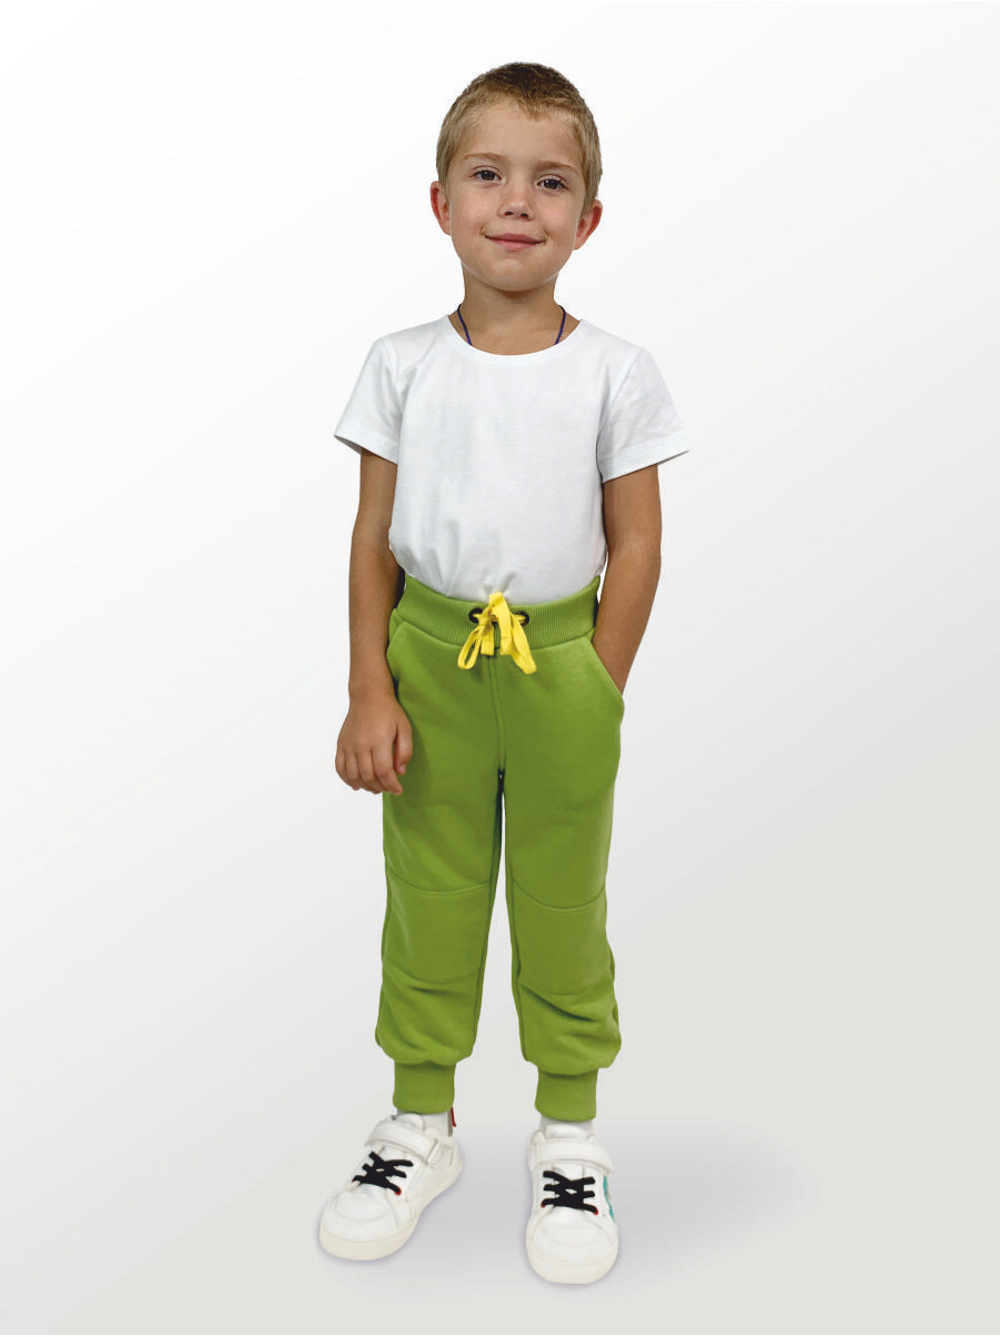 Брюки для детей, модель №2 (джоггеры), рост 104 см, зеленые